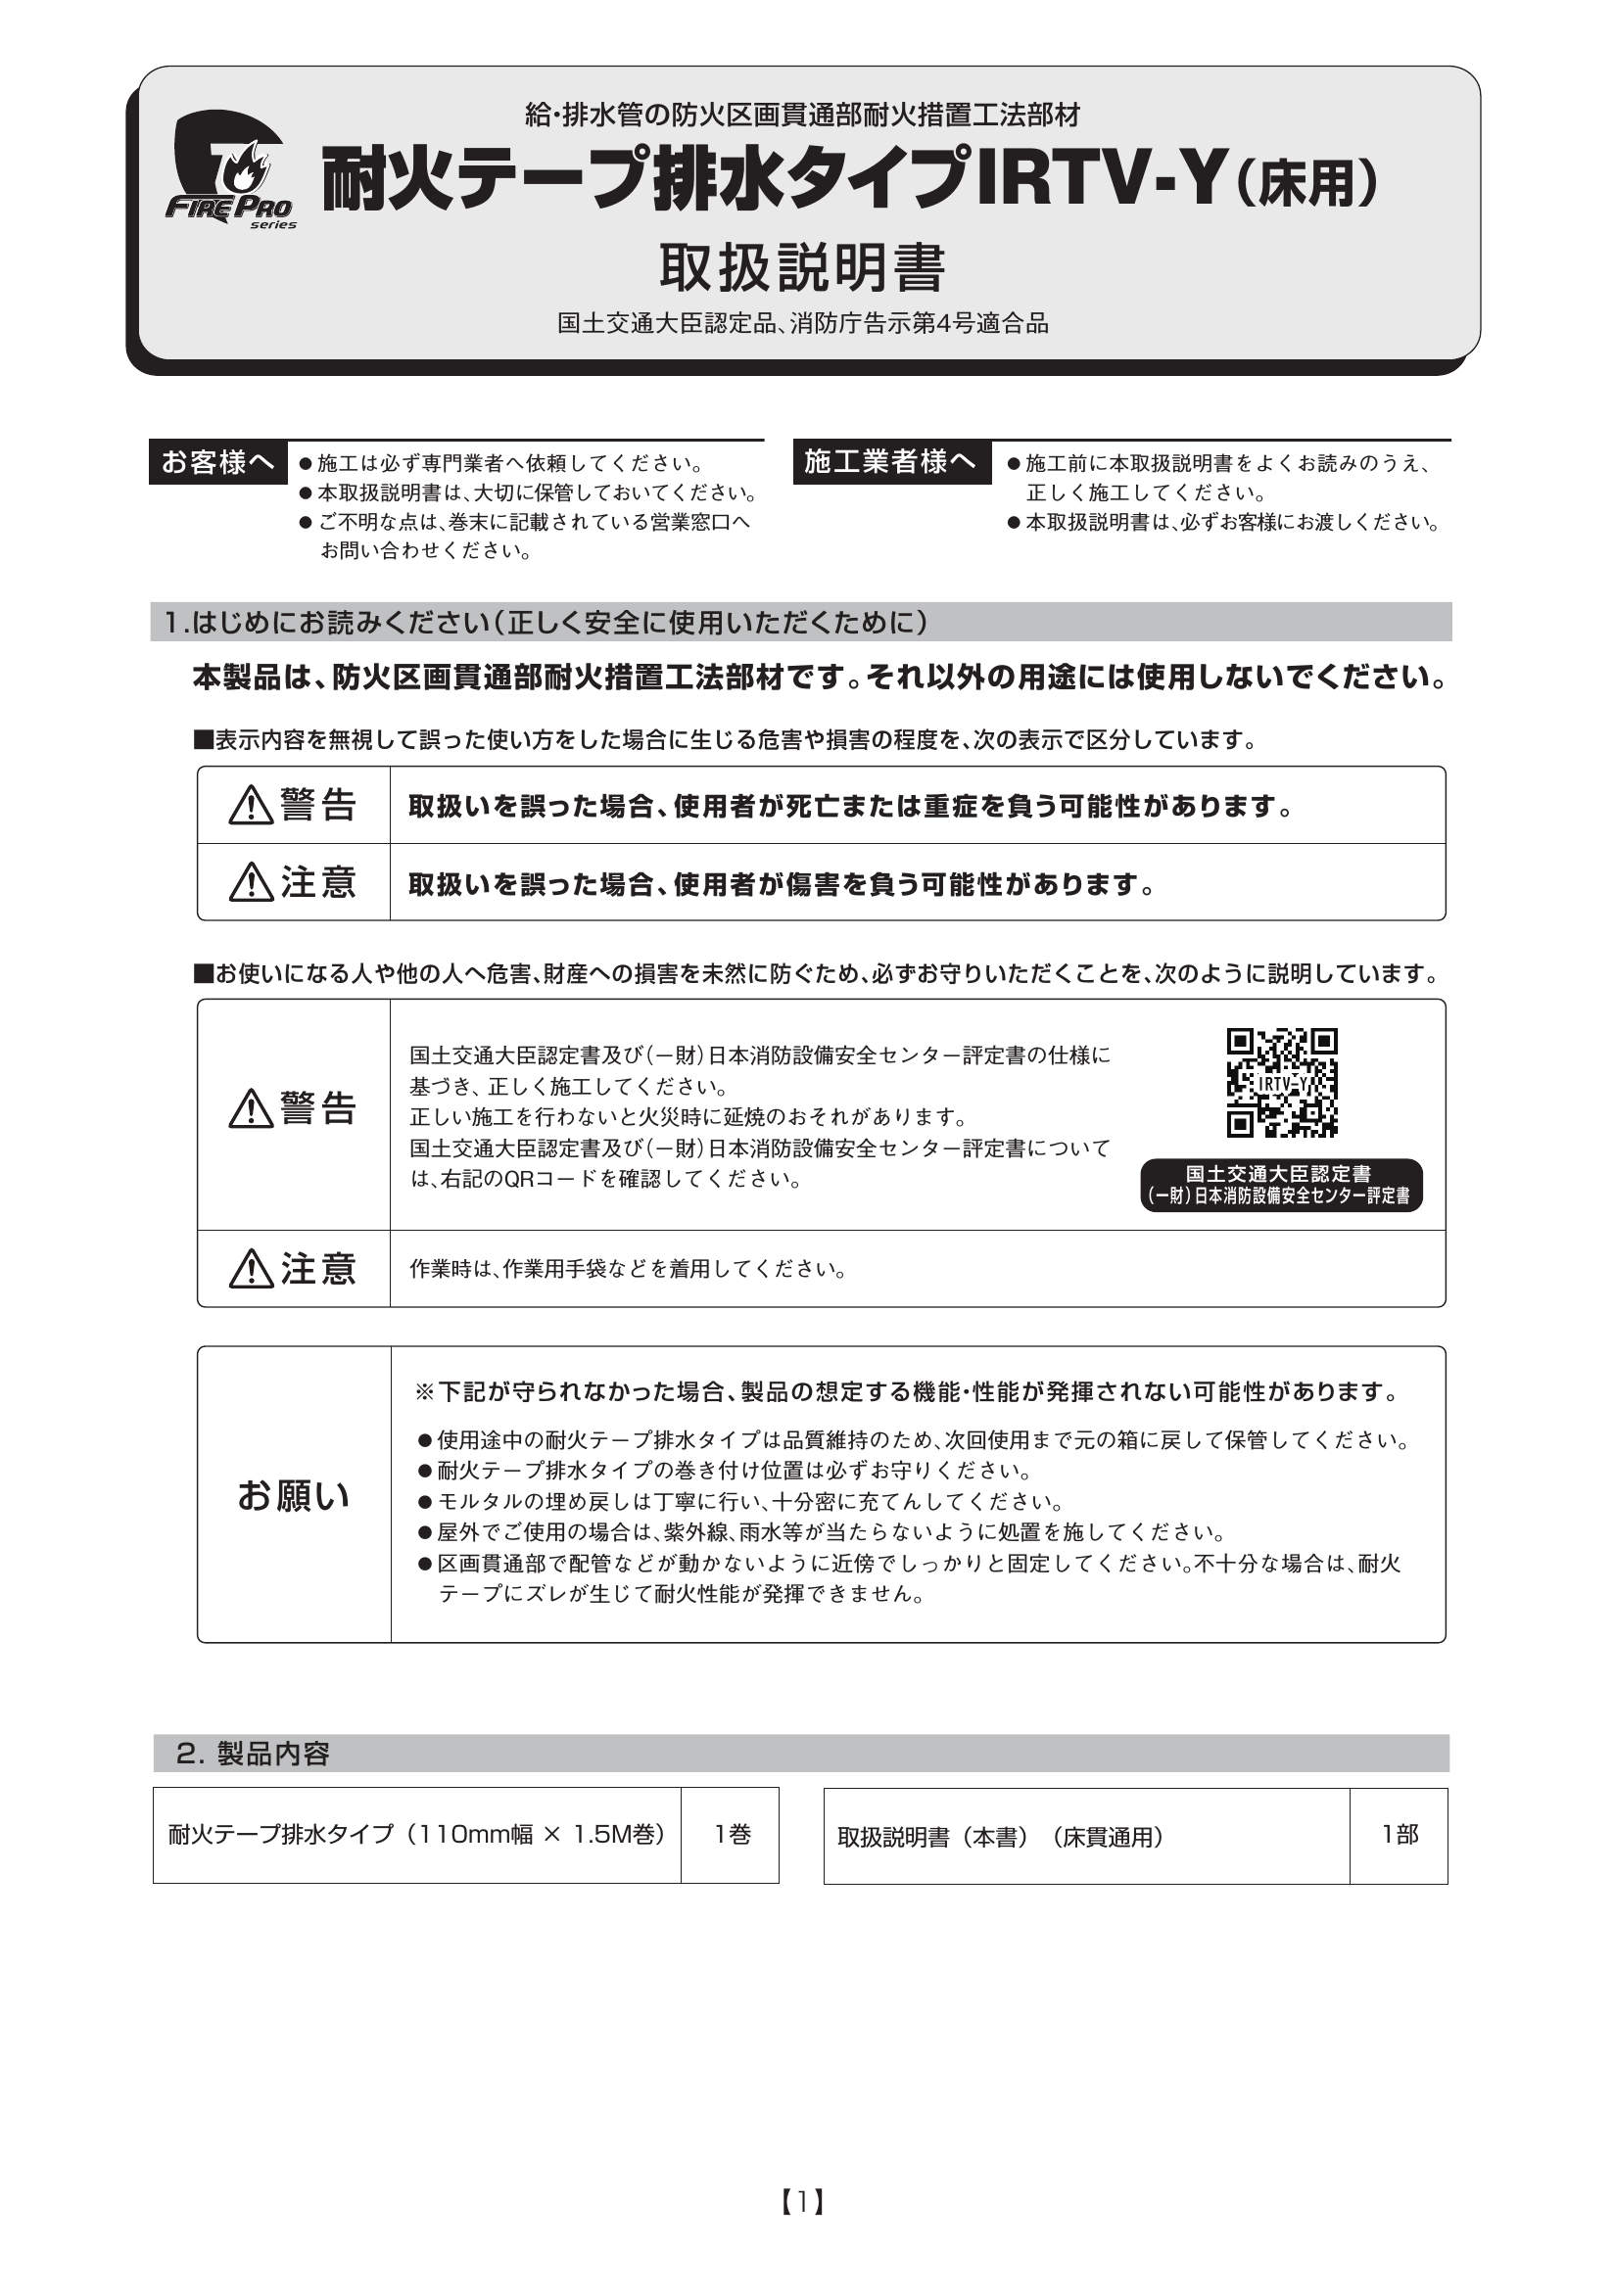 IRTV-Y_取扱説明書_20200831-01w.pdf